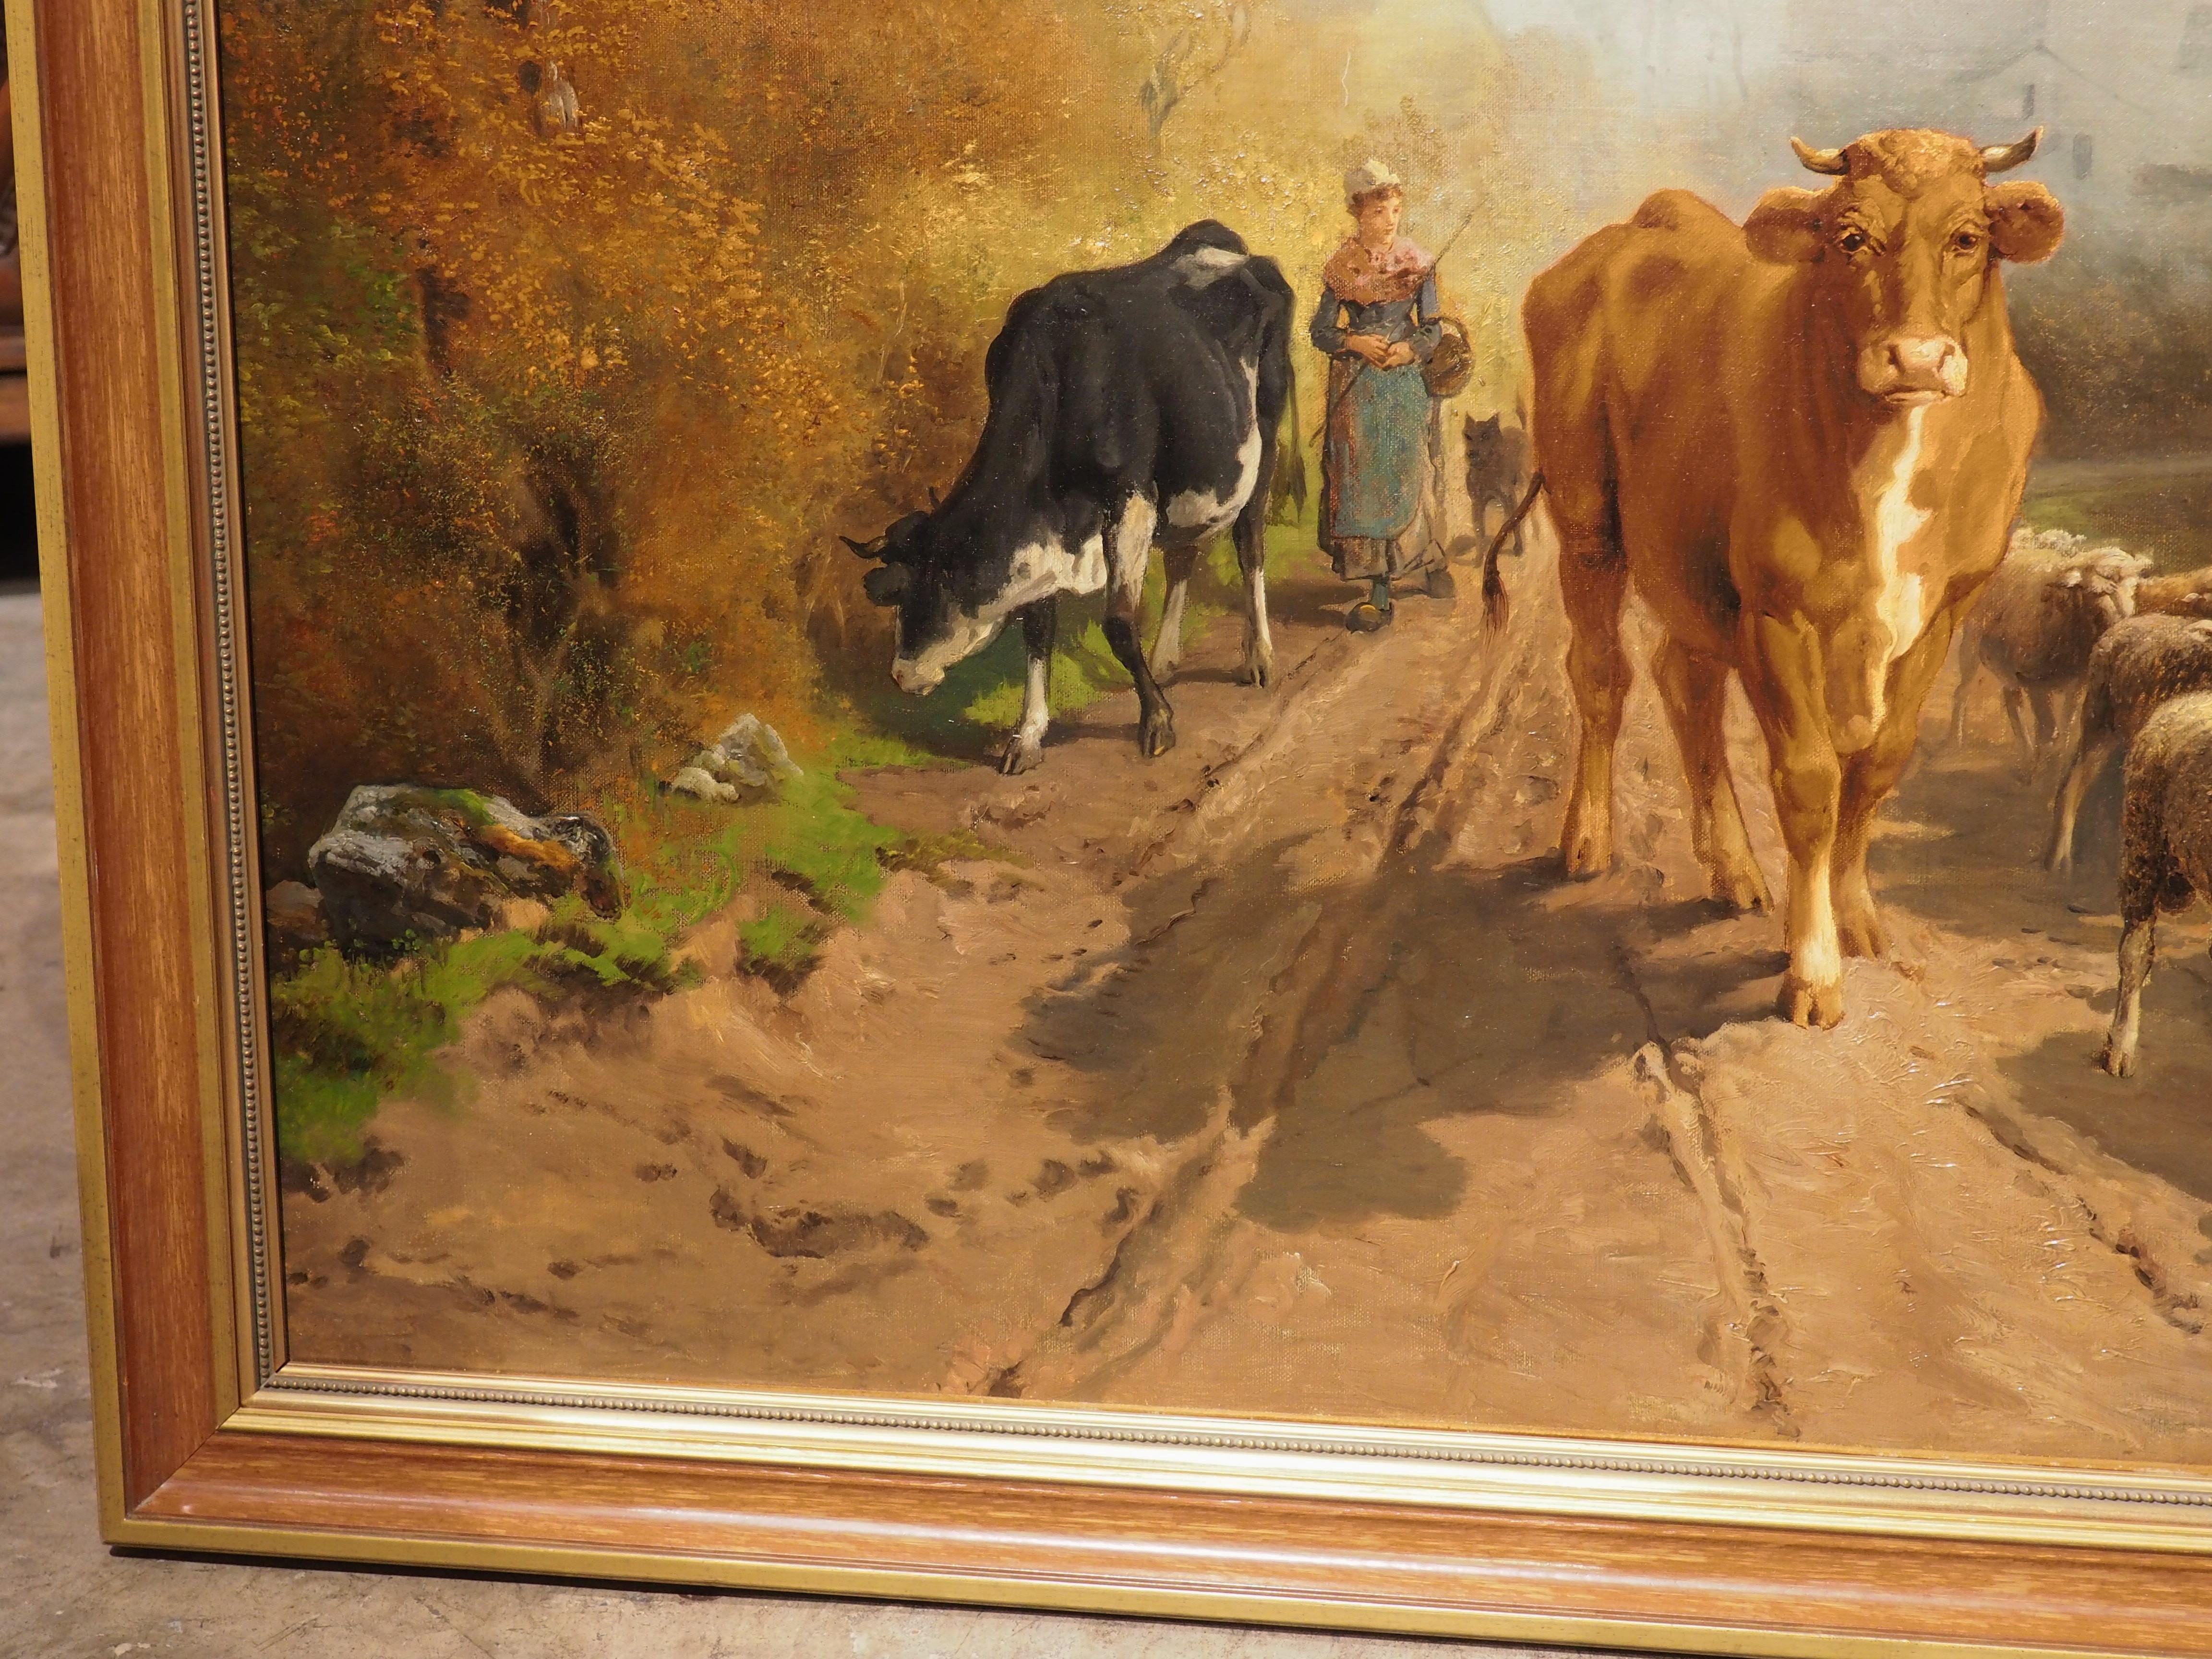 Cette grande peinture à l'huile pastorale (près de 51 pouces de long) représentant une femme marchant parmi des animaux, a été signée et datée en bas à droite par l'artiste, 